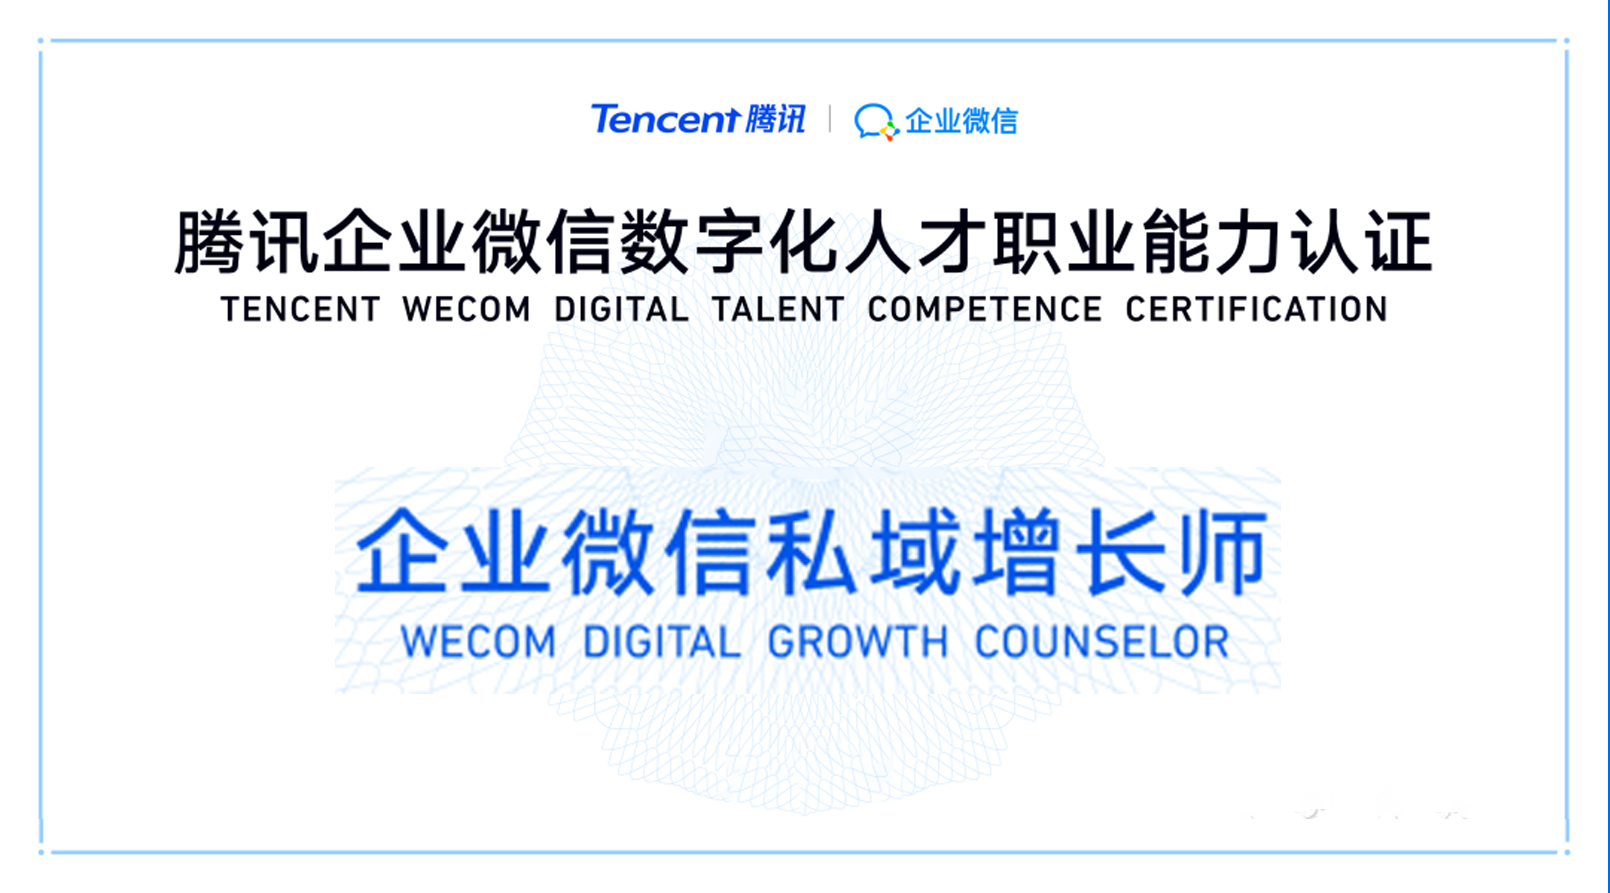 恭喜智順網絡多名優秀人才被授予「企業微信私域增長師」職業認證